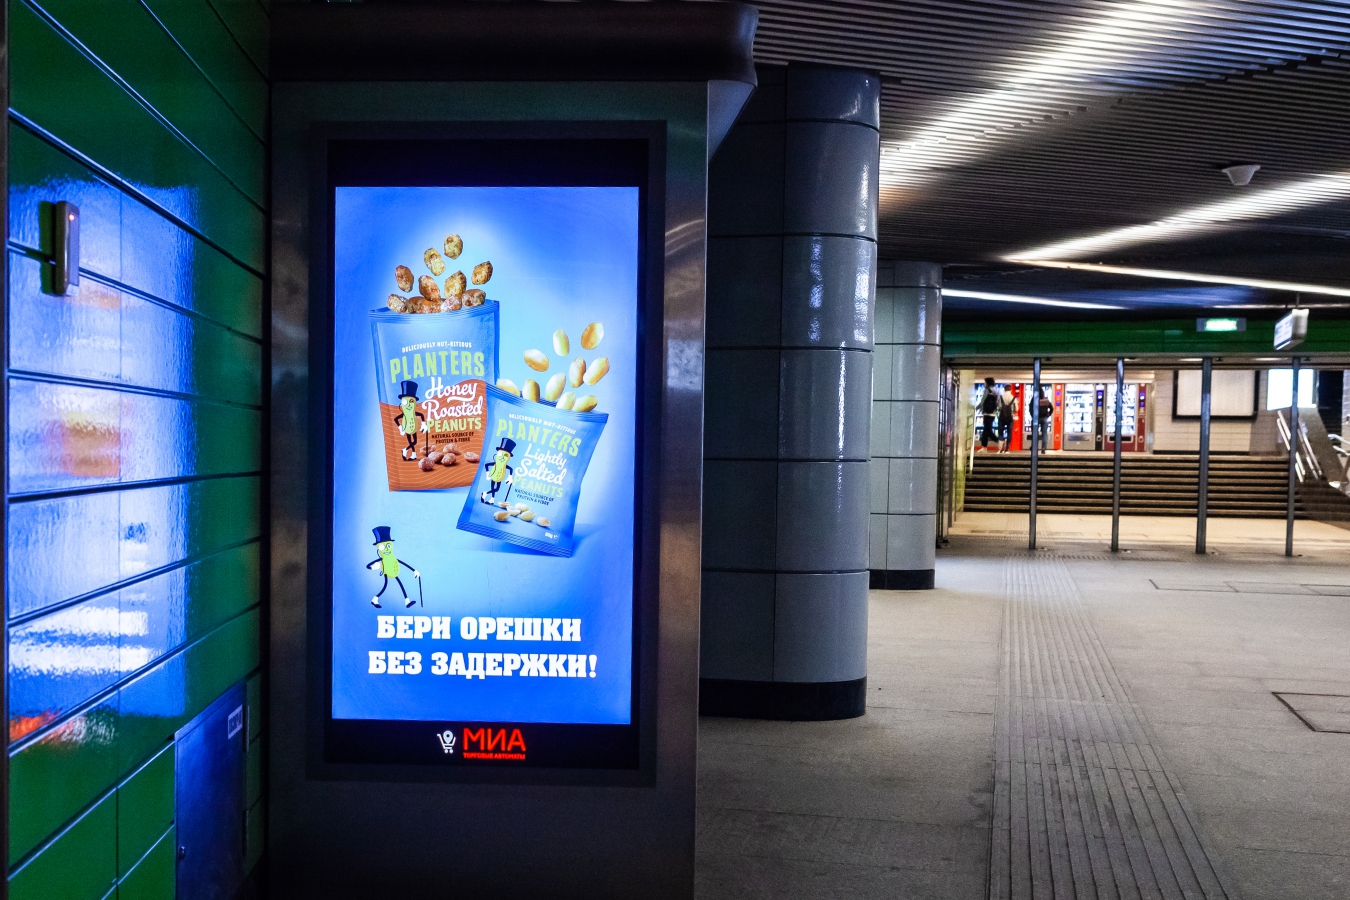 На главном экране появилась реклама. Реклама в метро. Реклама метрополитена. Рекламные баннеры в метро. Reklamniye ekrani v torgovix Sentrax.